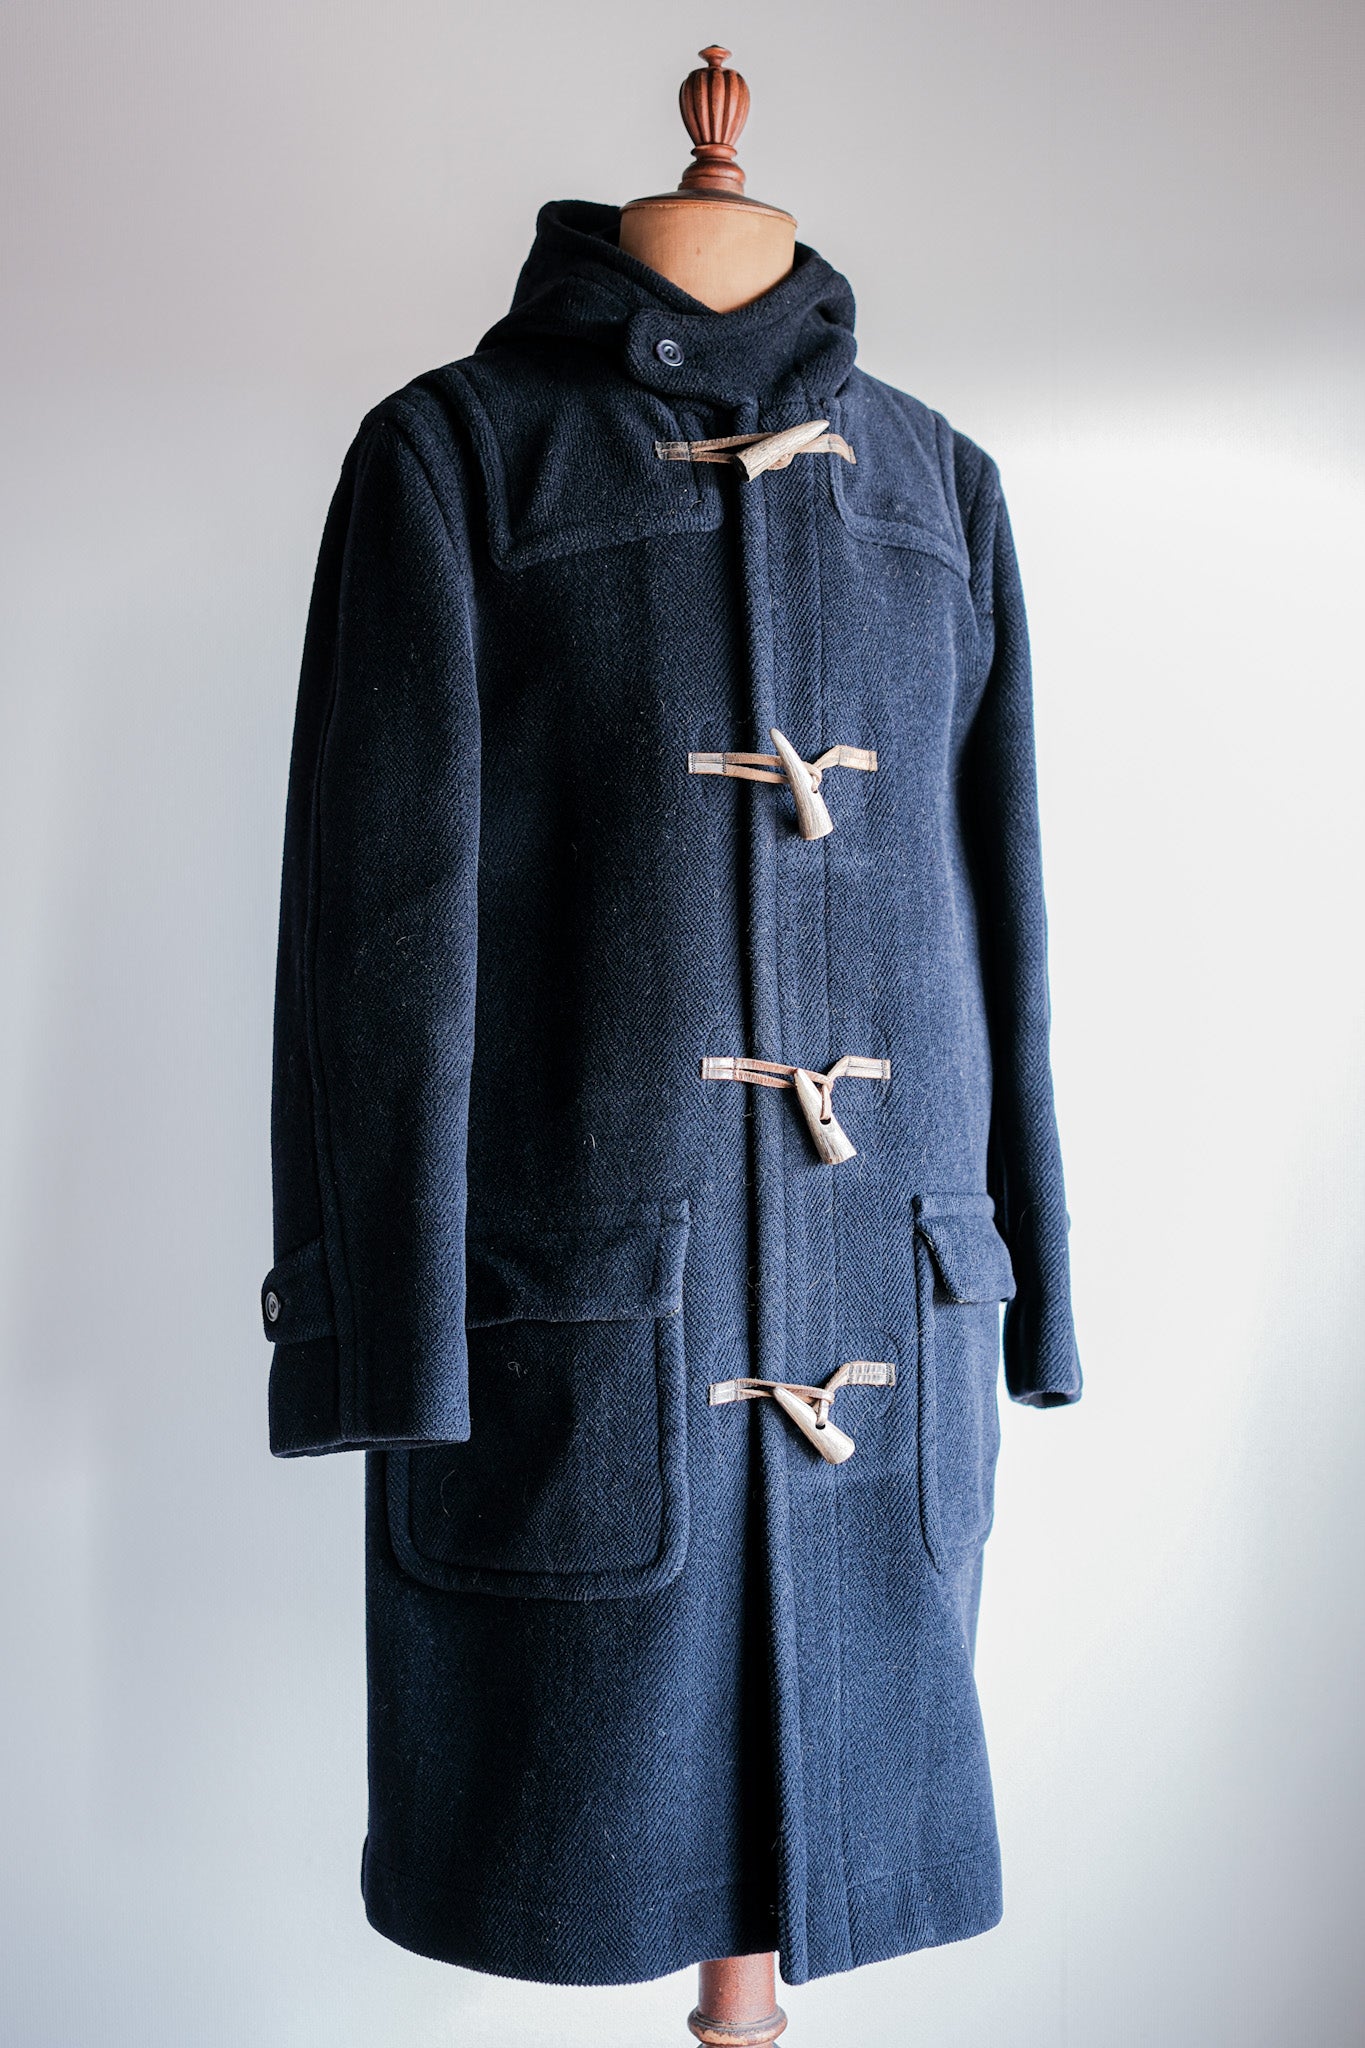 [〜90年代]舊的逆變器HBT羊毛羊毛外套的尺寸。40L“ Moorbrook”“ M.Bardelli除了注意